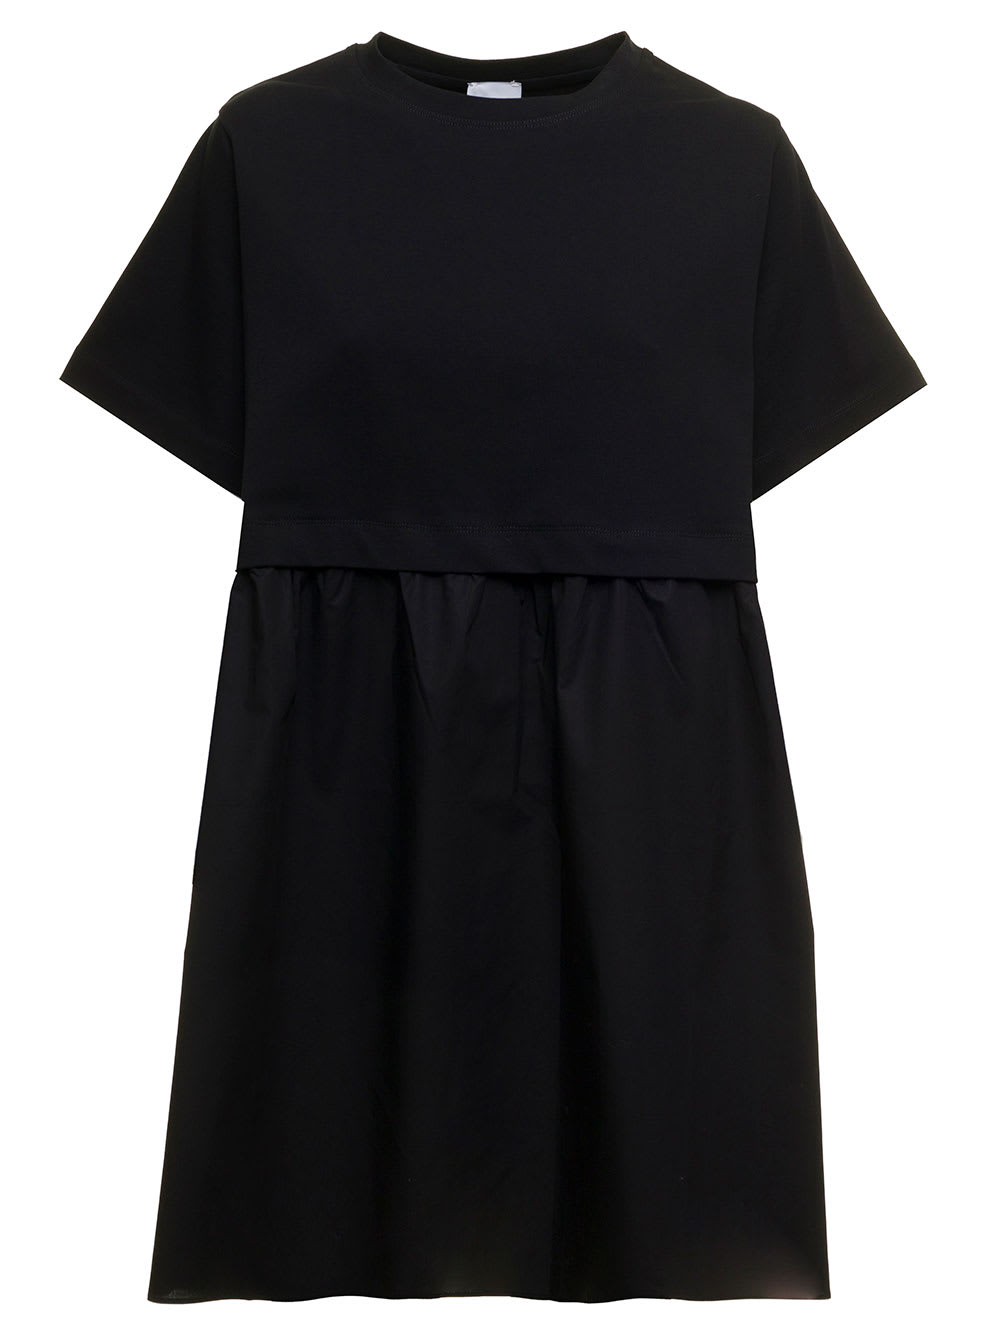 Patou Womans Black Short Sleeved Cotton Dress